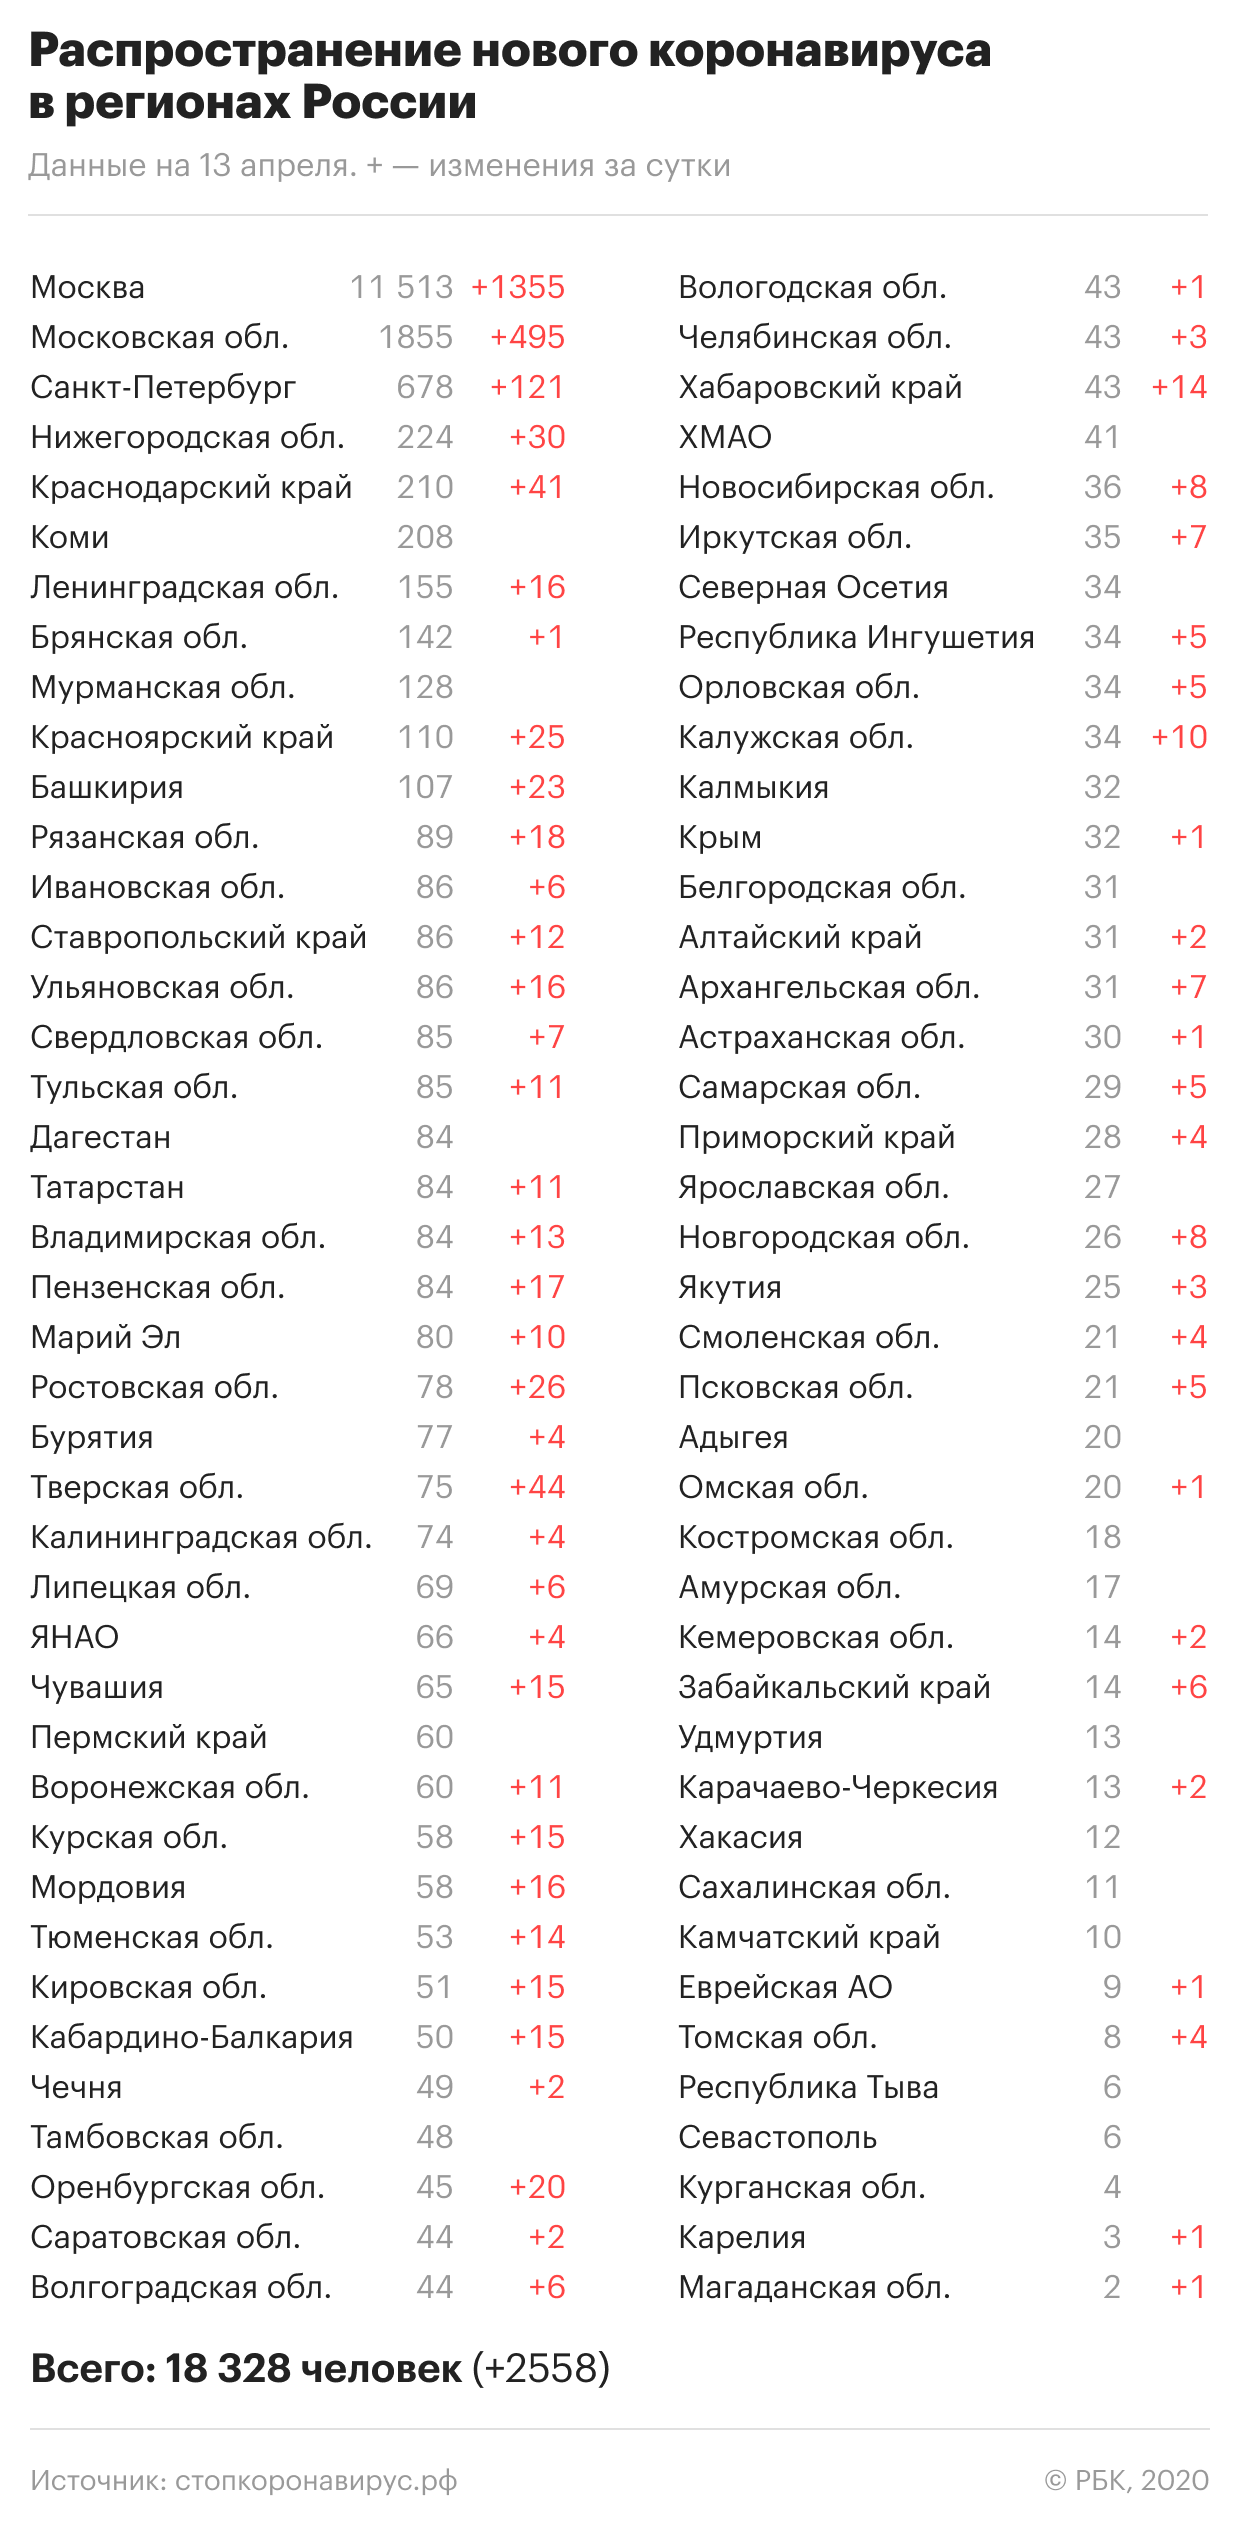 За неделю число поддерживающих обнуление срока Путина выросло на 6%